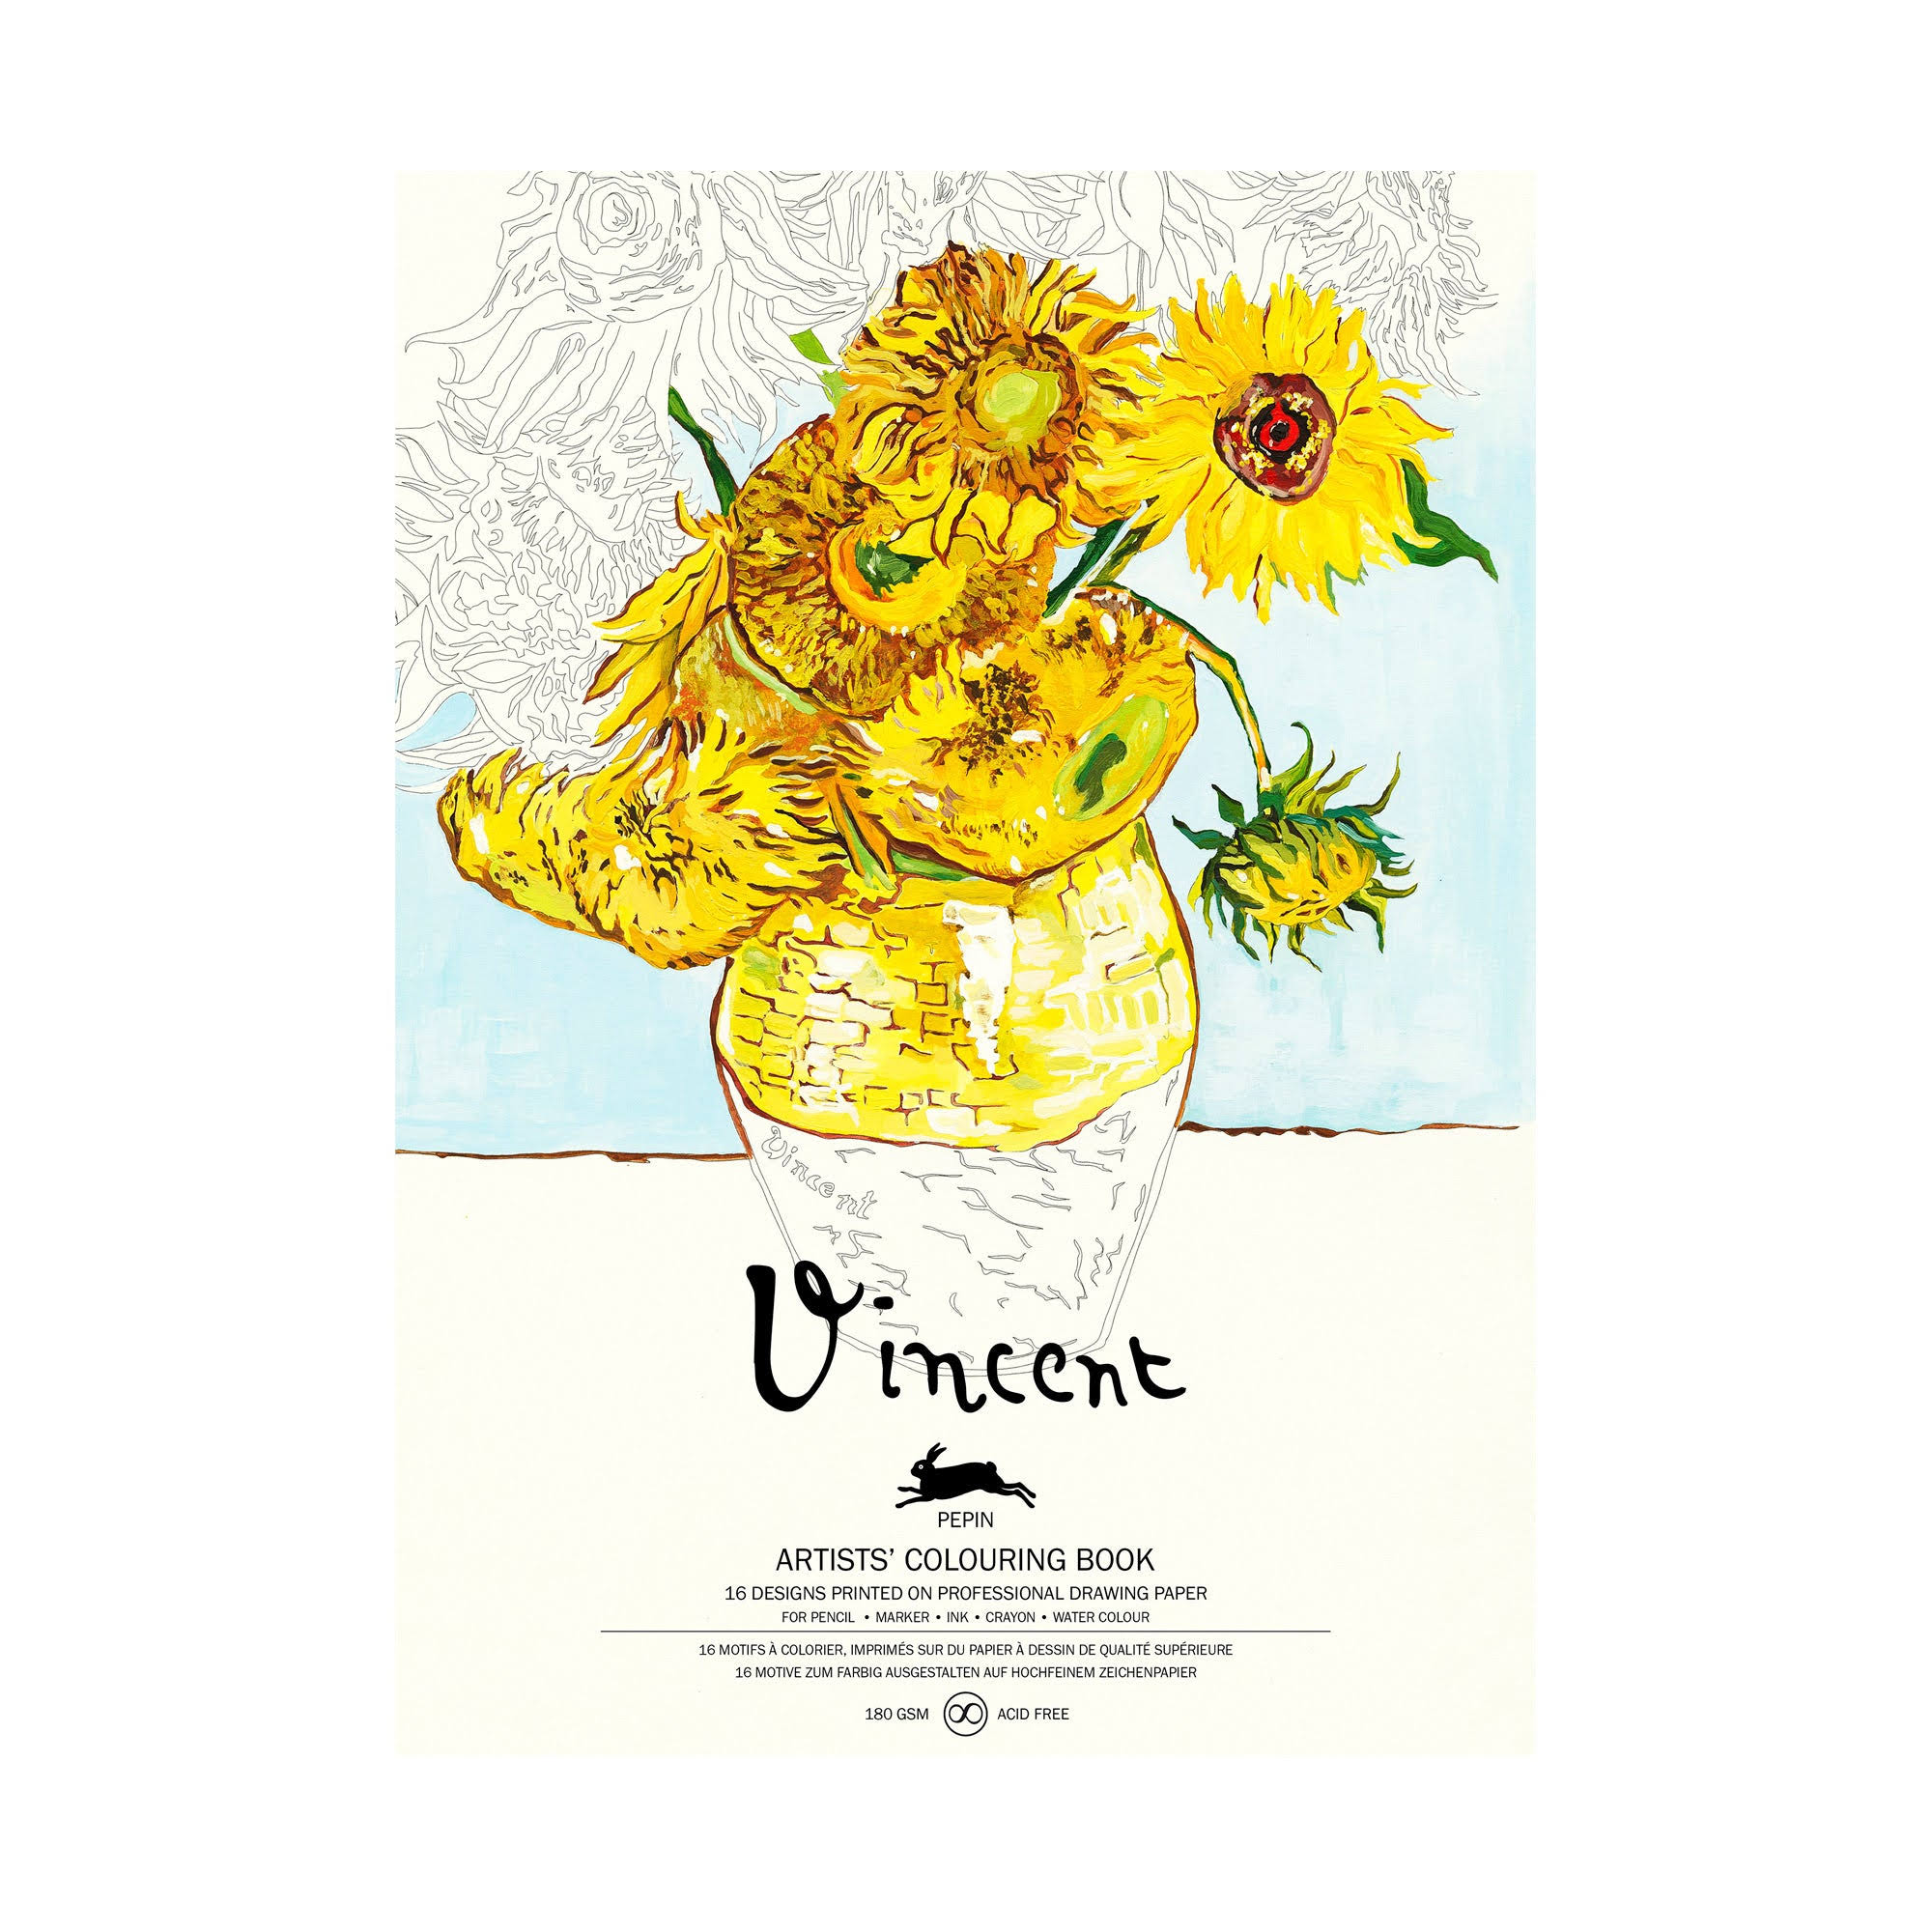 Pepin Press - Artists' Colouring Book: Vincent van Gogh